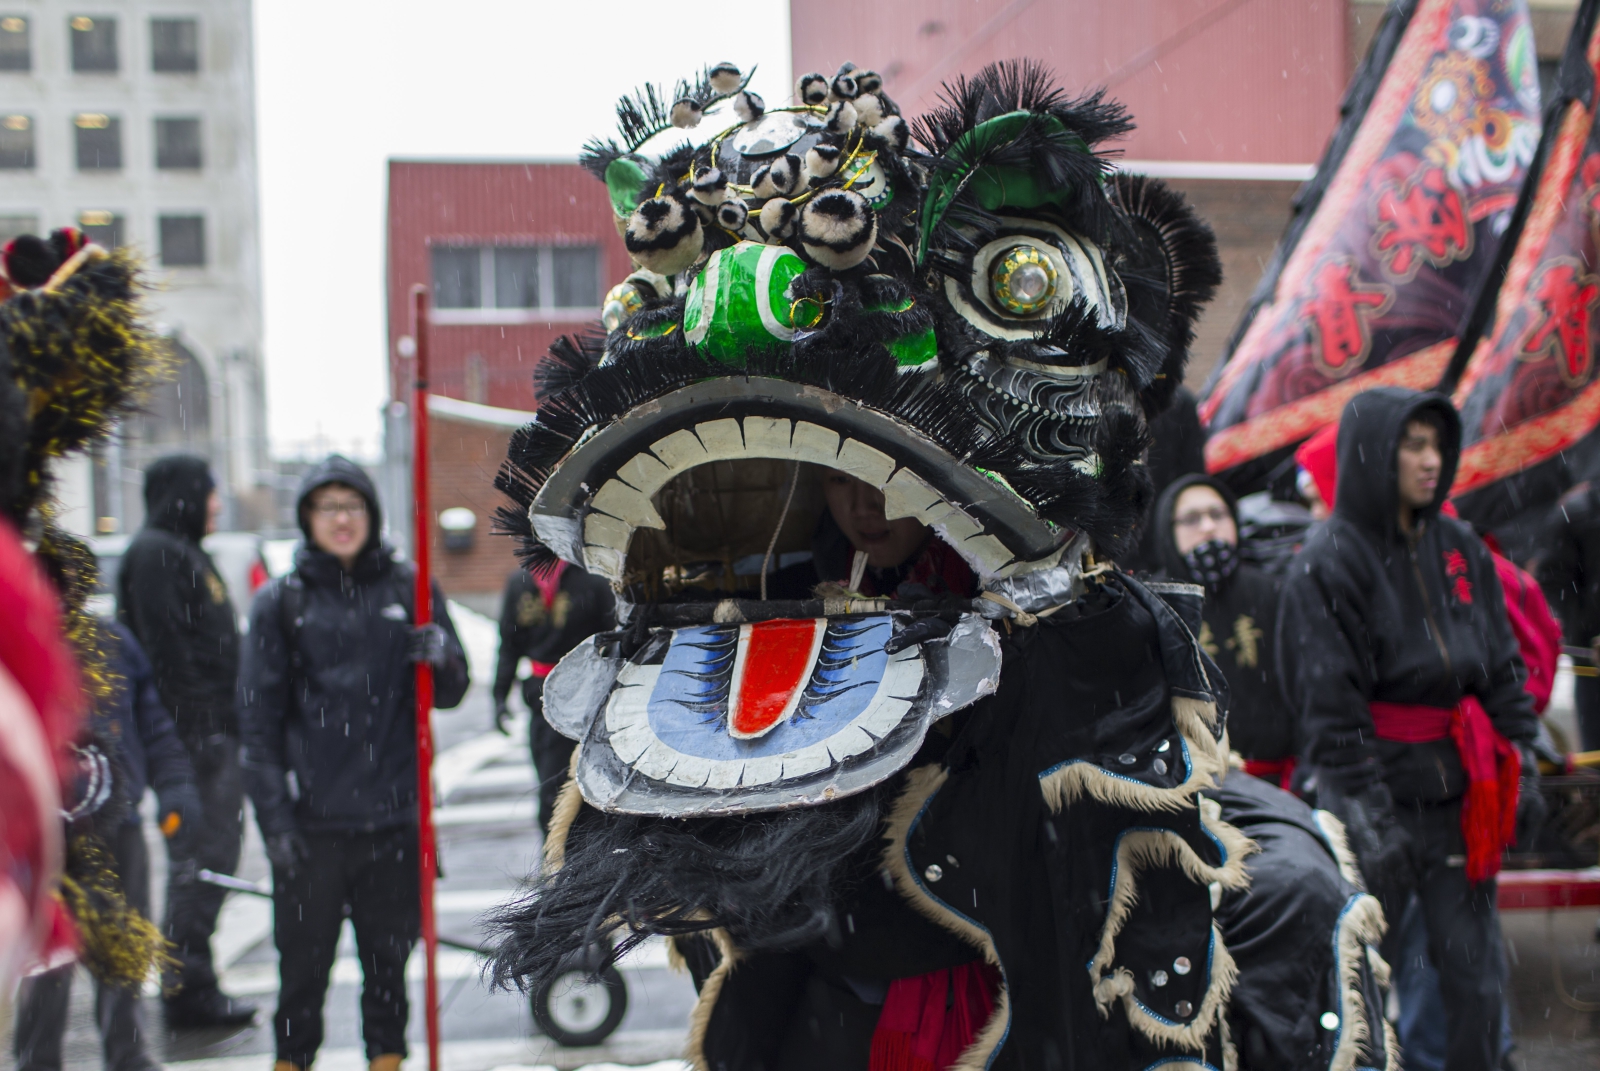 Trwa świętowanie chińskiego nowego roku. Tancerz przebrany za lwa występuje na ulicach Chinatown w Bostonie, Massachusetts, USA.